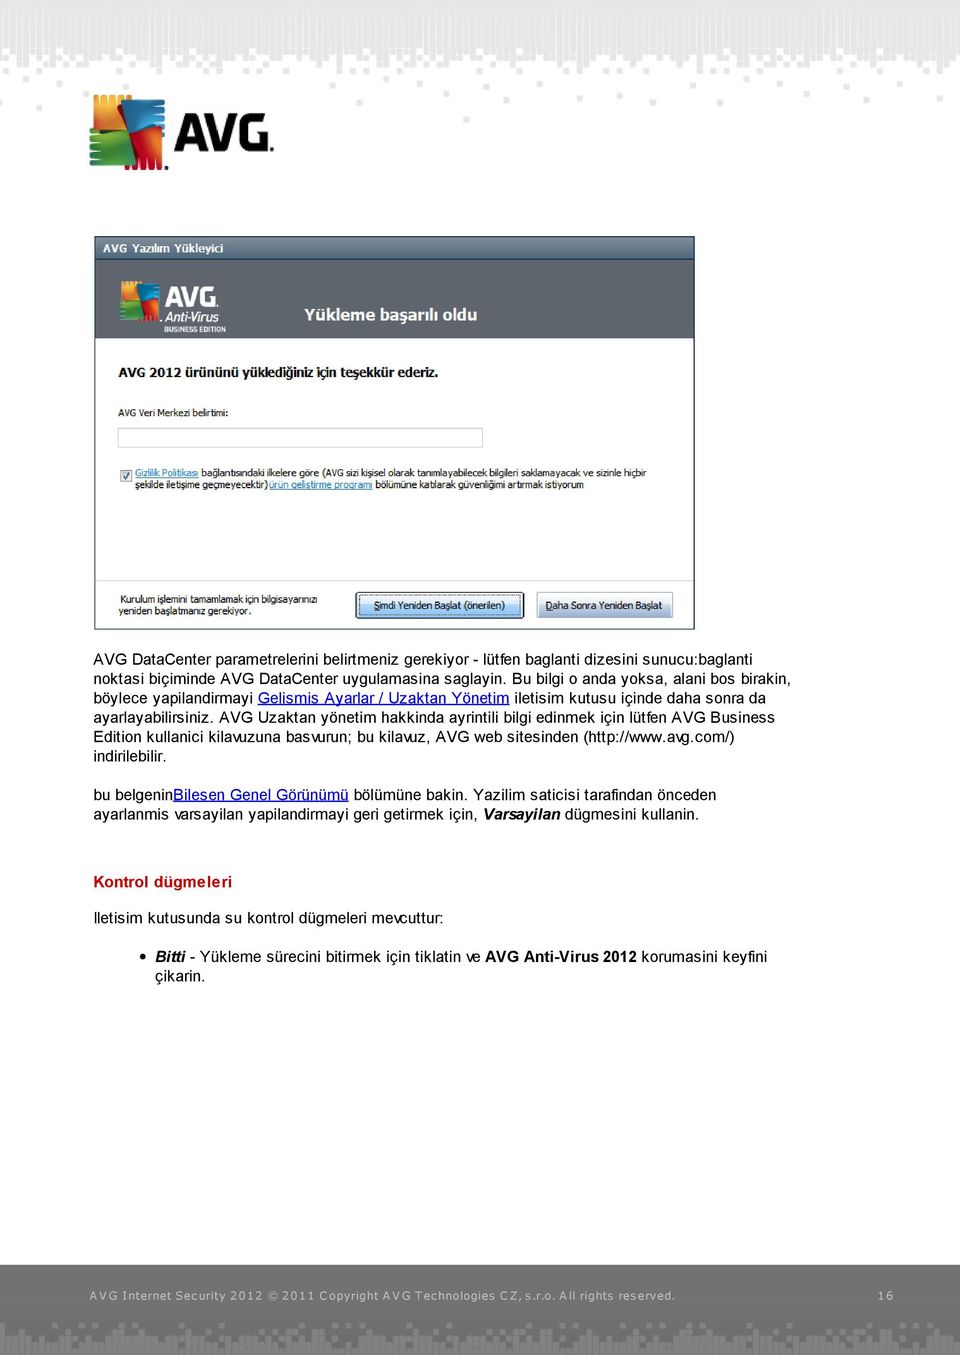 AVG Uzaktan yönetim hakkinda ayrintili bilgi edinmek için lütfen AVG Business Edition kullanici kilavuzuna basvurun; bu kilavuz, AVG web sitesinden (http://www.avg.com/) indirilebilir.